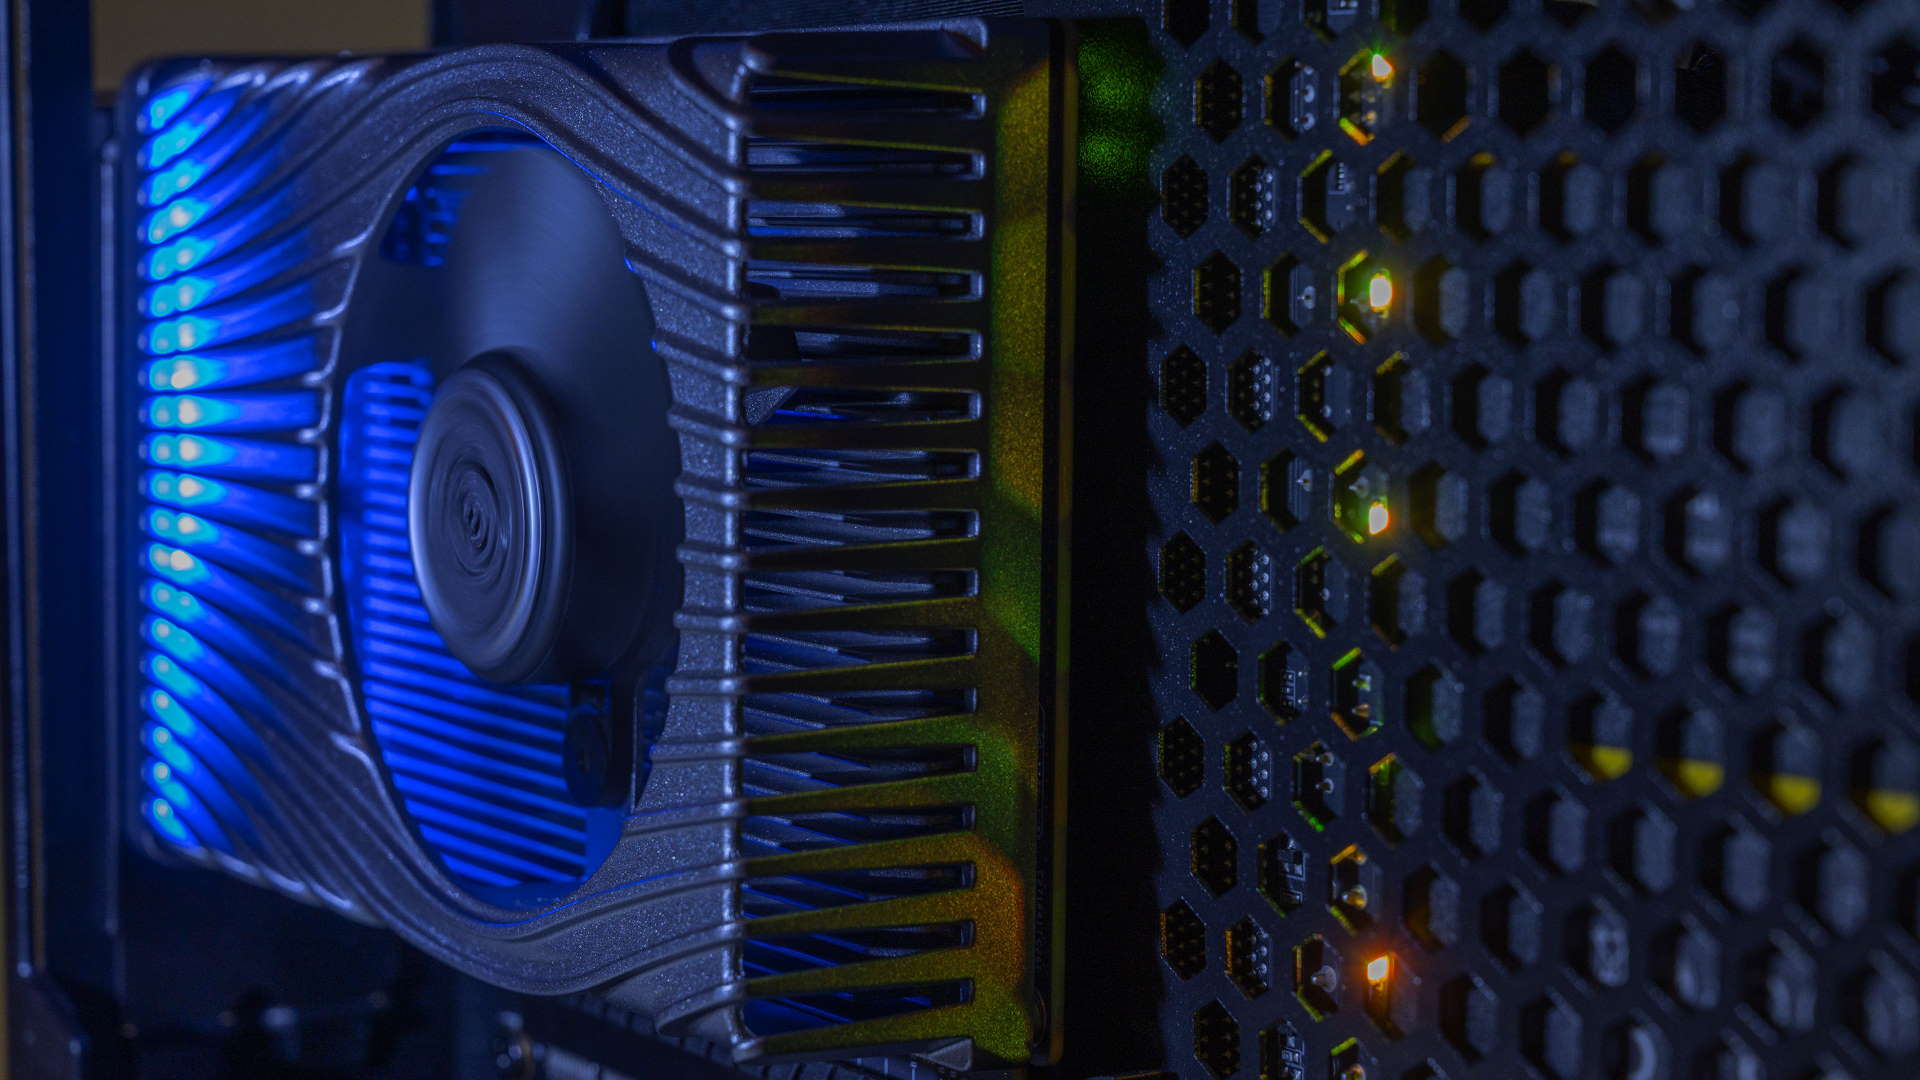 Intel esittelee Xe-HPG-peligrafiikkapiirinsä sisällä olevan sirun, joka on valmis kilpailemaan AMD:n ja Nvidian kanssa